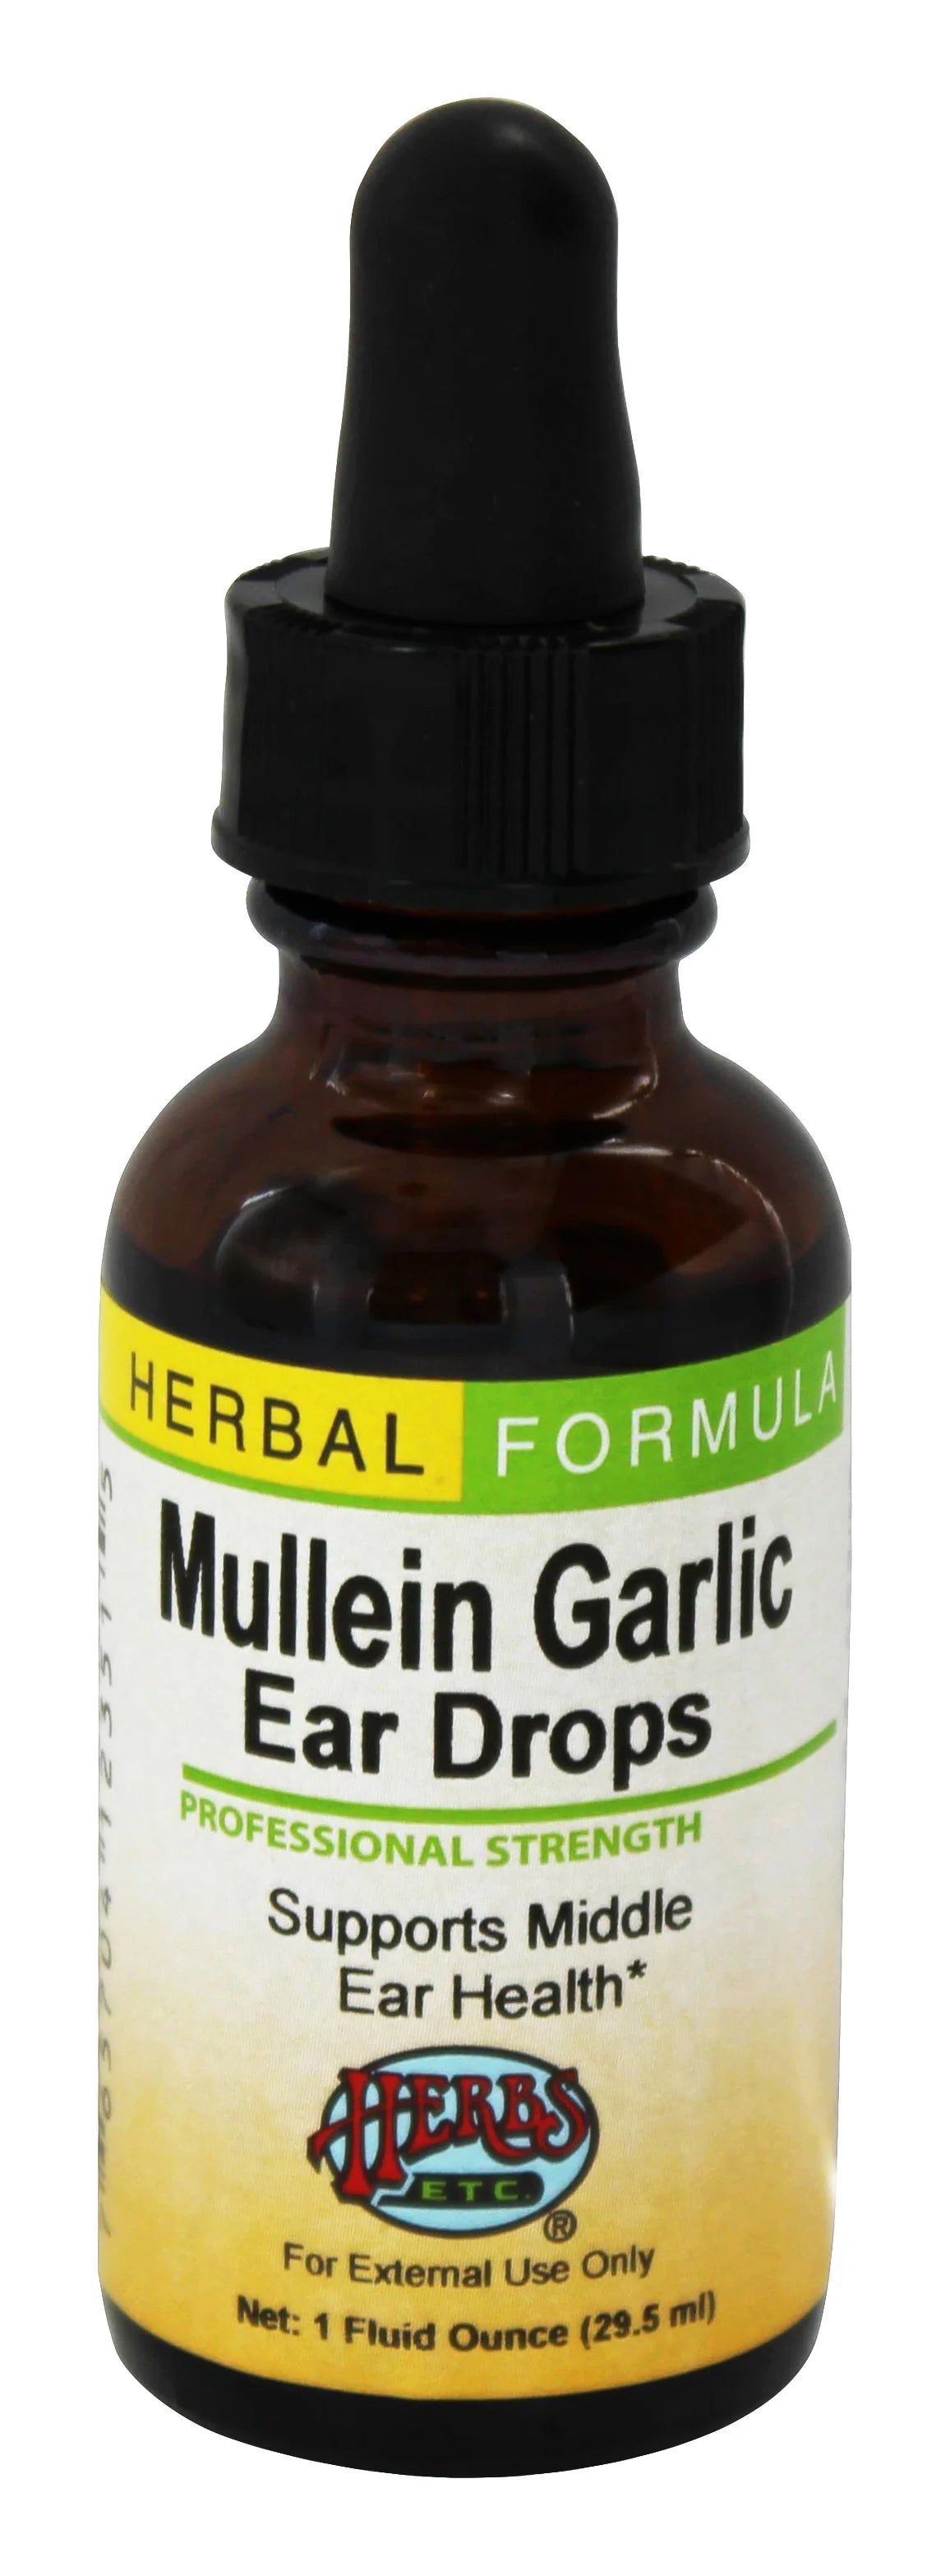 Mullein / Garlic Ear Drops 1 OZ